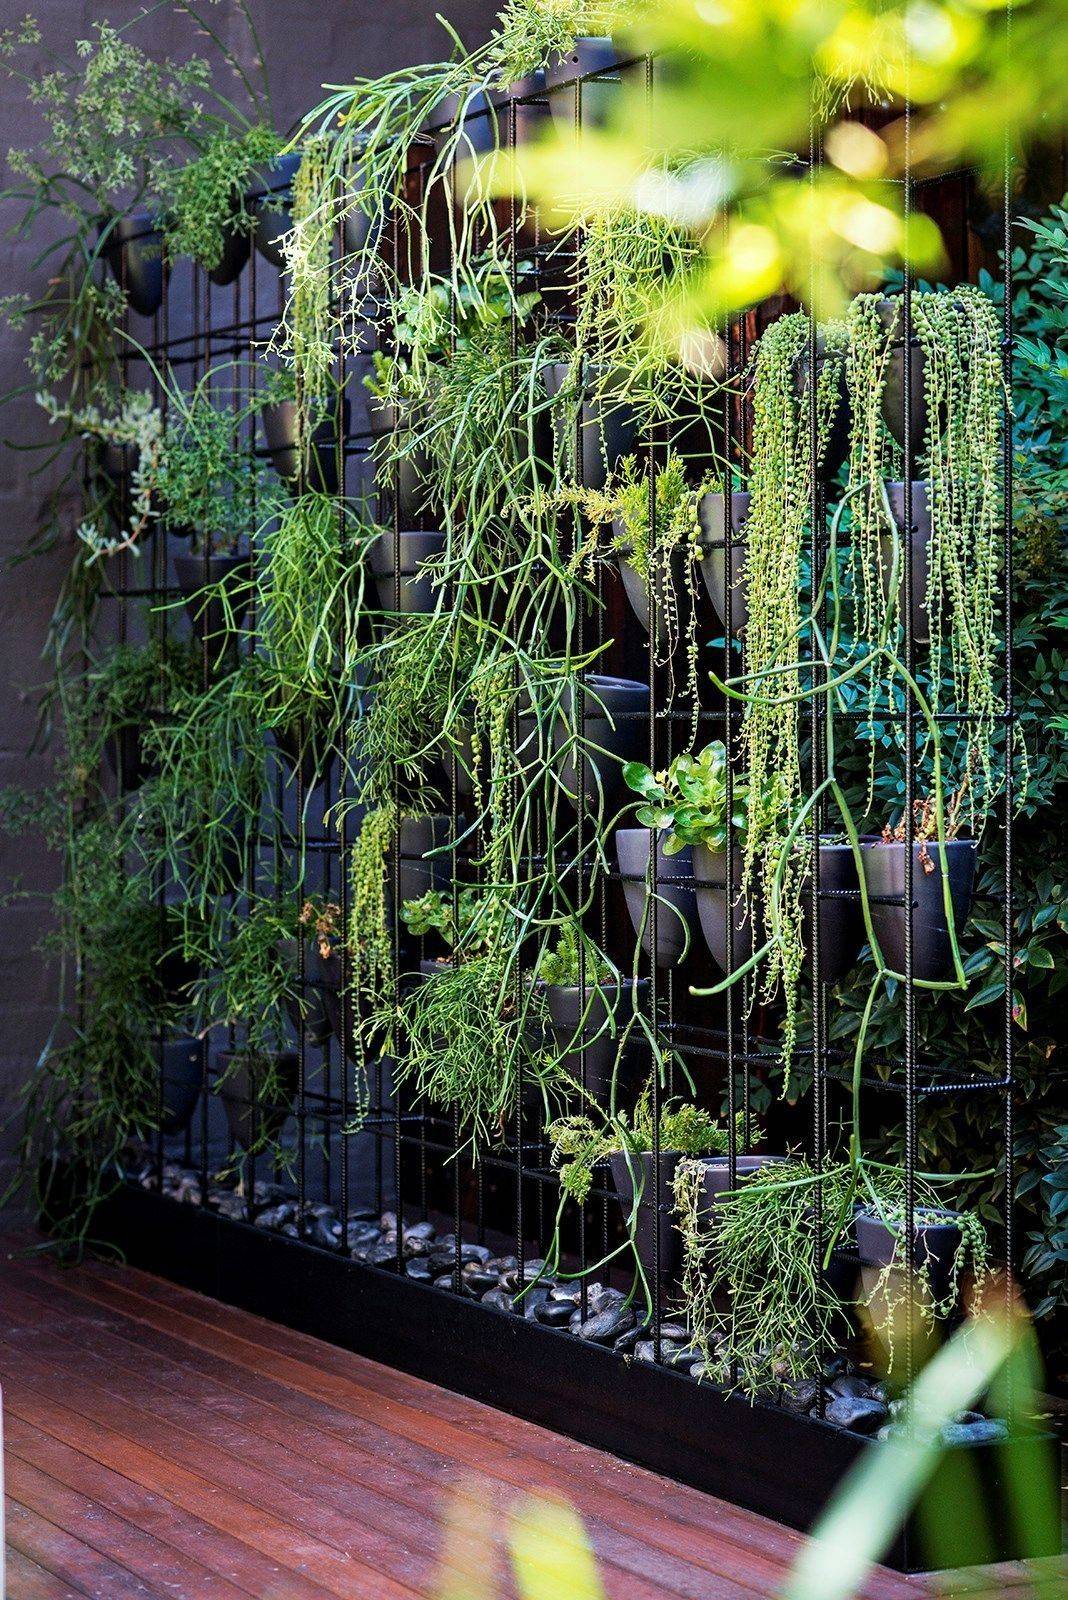 Tropical Garden Ideas